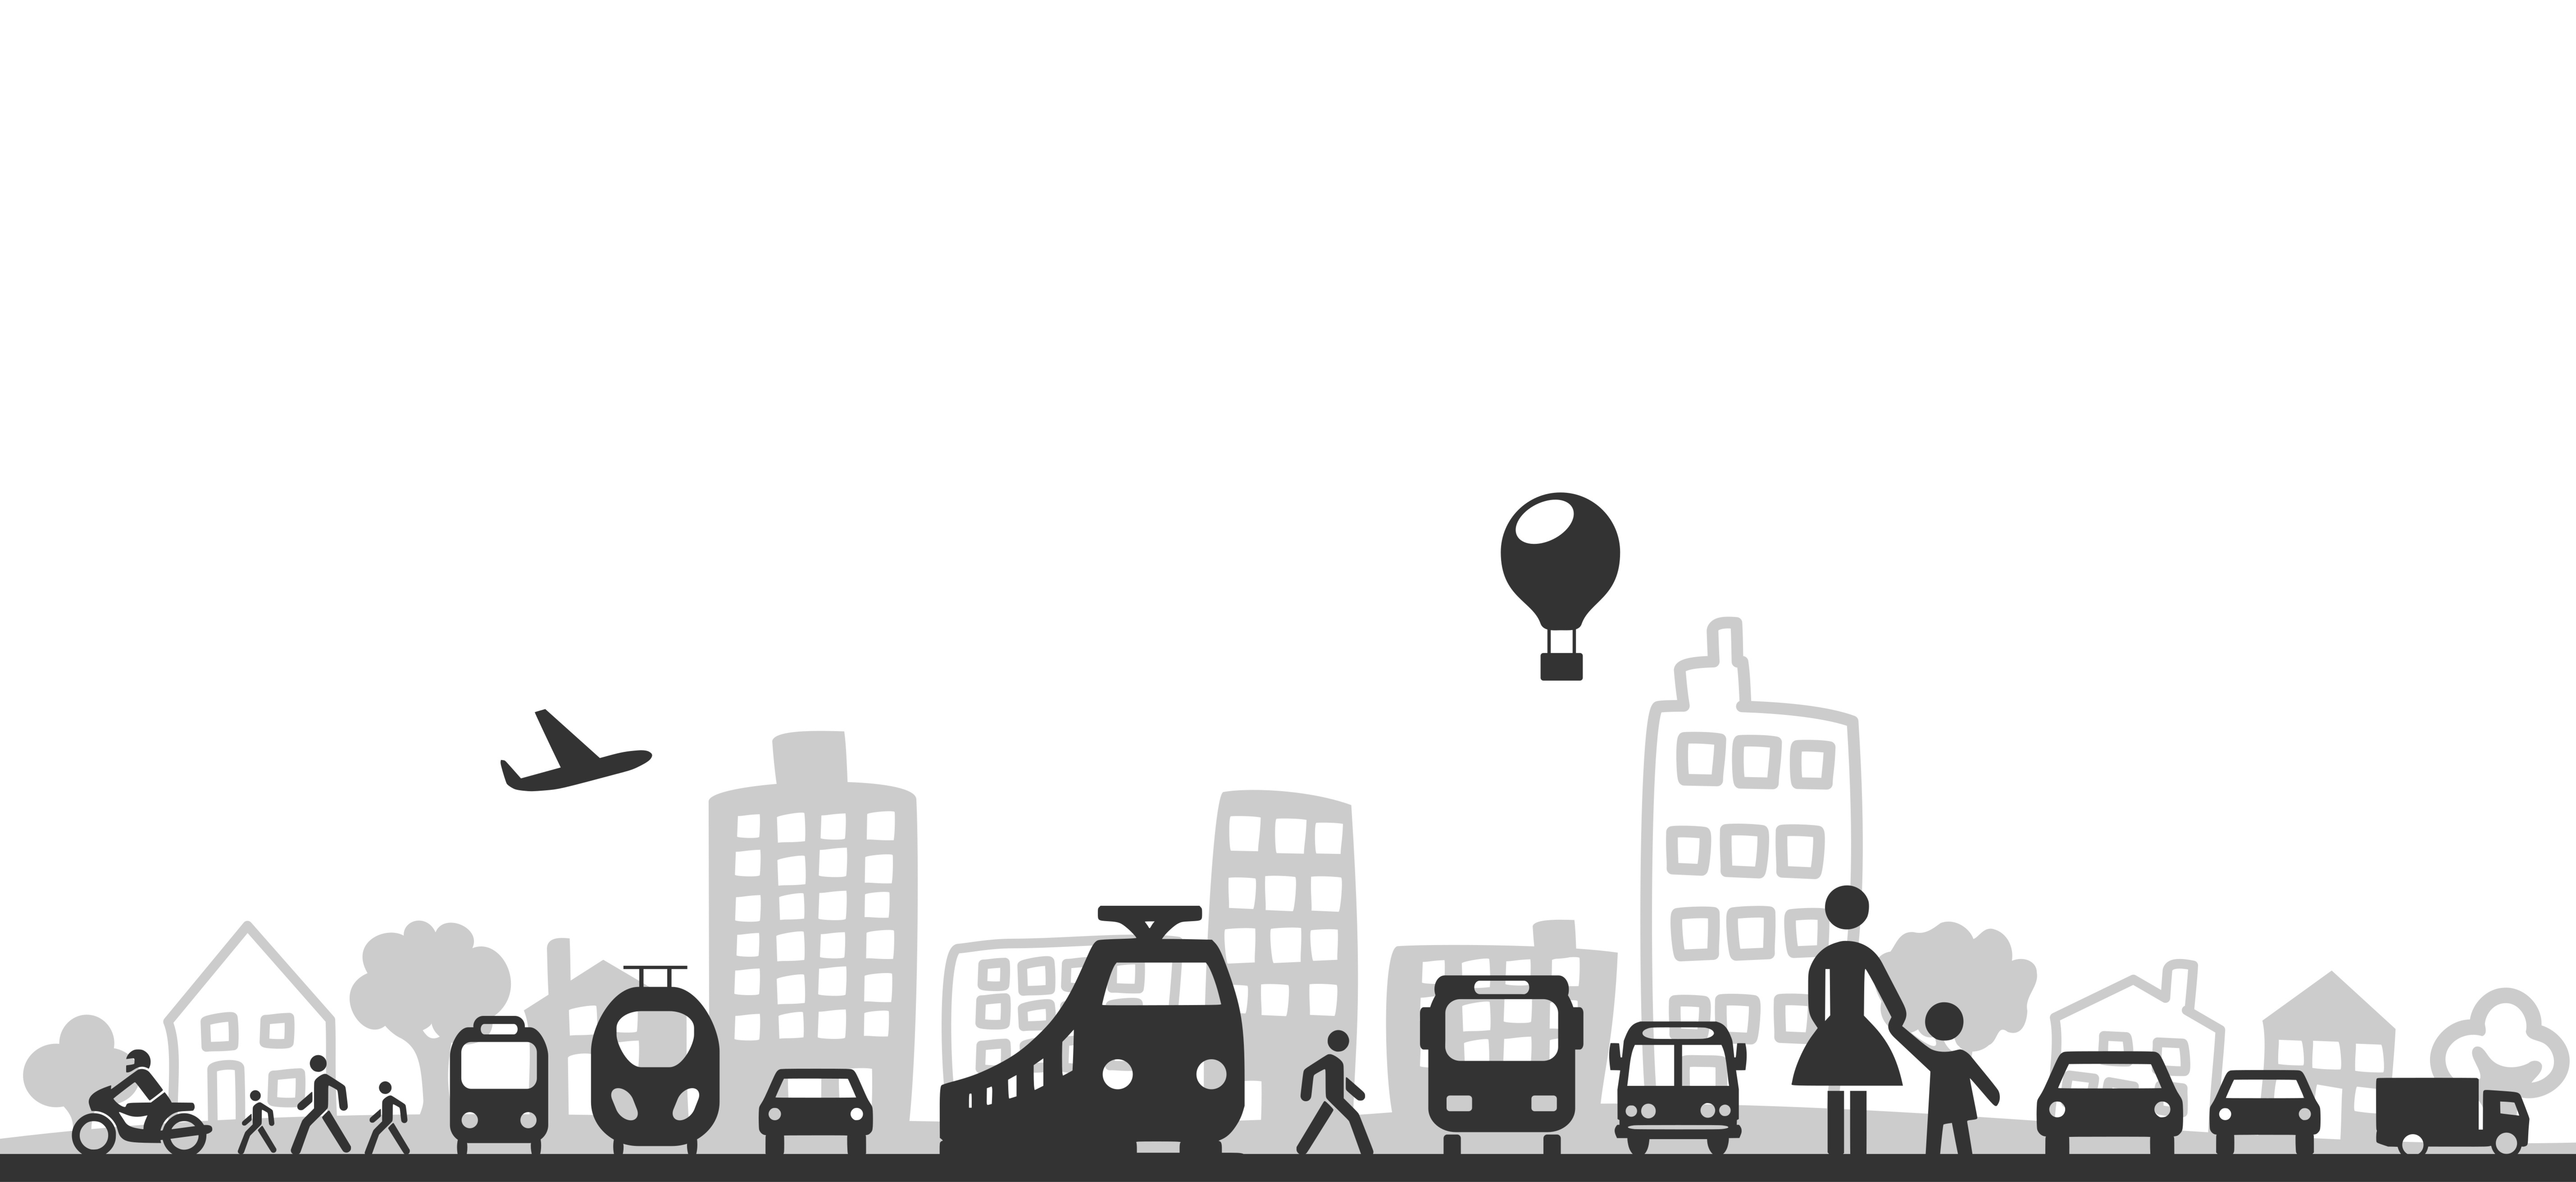 Darstellung der multimodalen Transport- und Fortbewegungsmöglichkeiten in der Mobilität